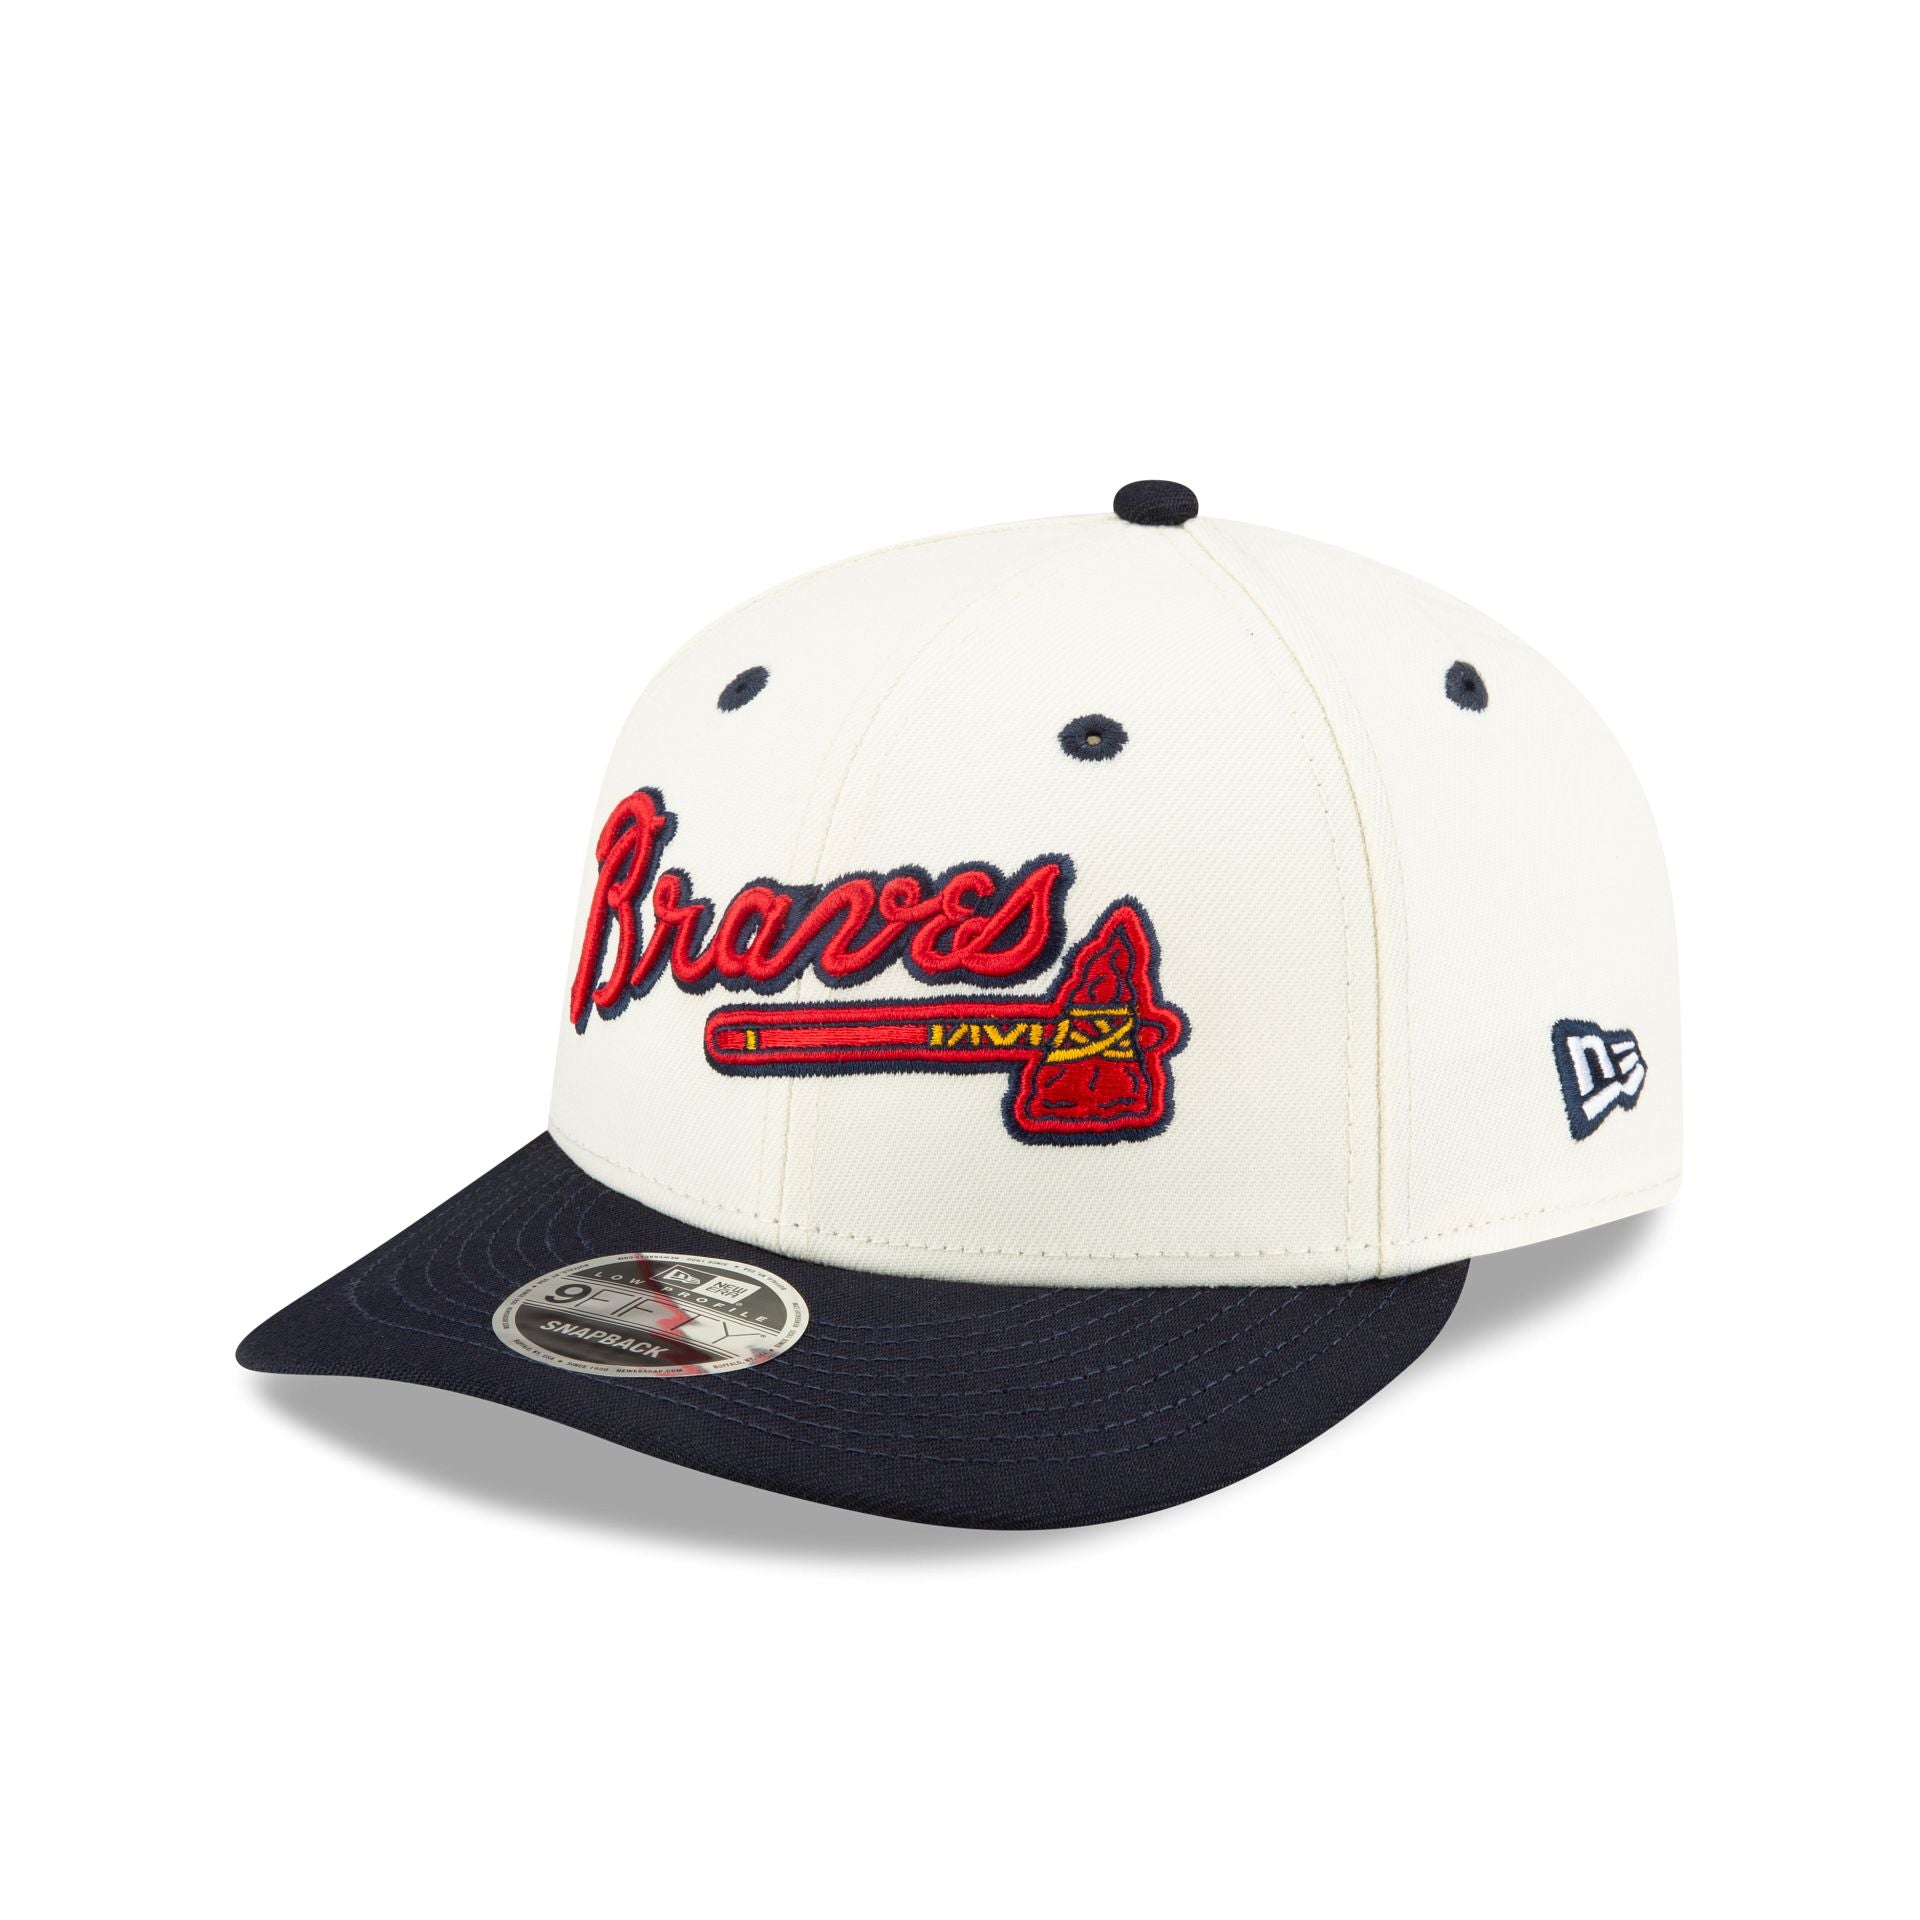 Atlanta Braves Team 9FORTY Spring Training White/Blue Trucker - New Era cap